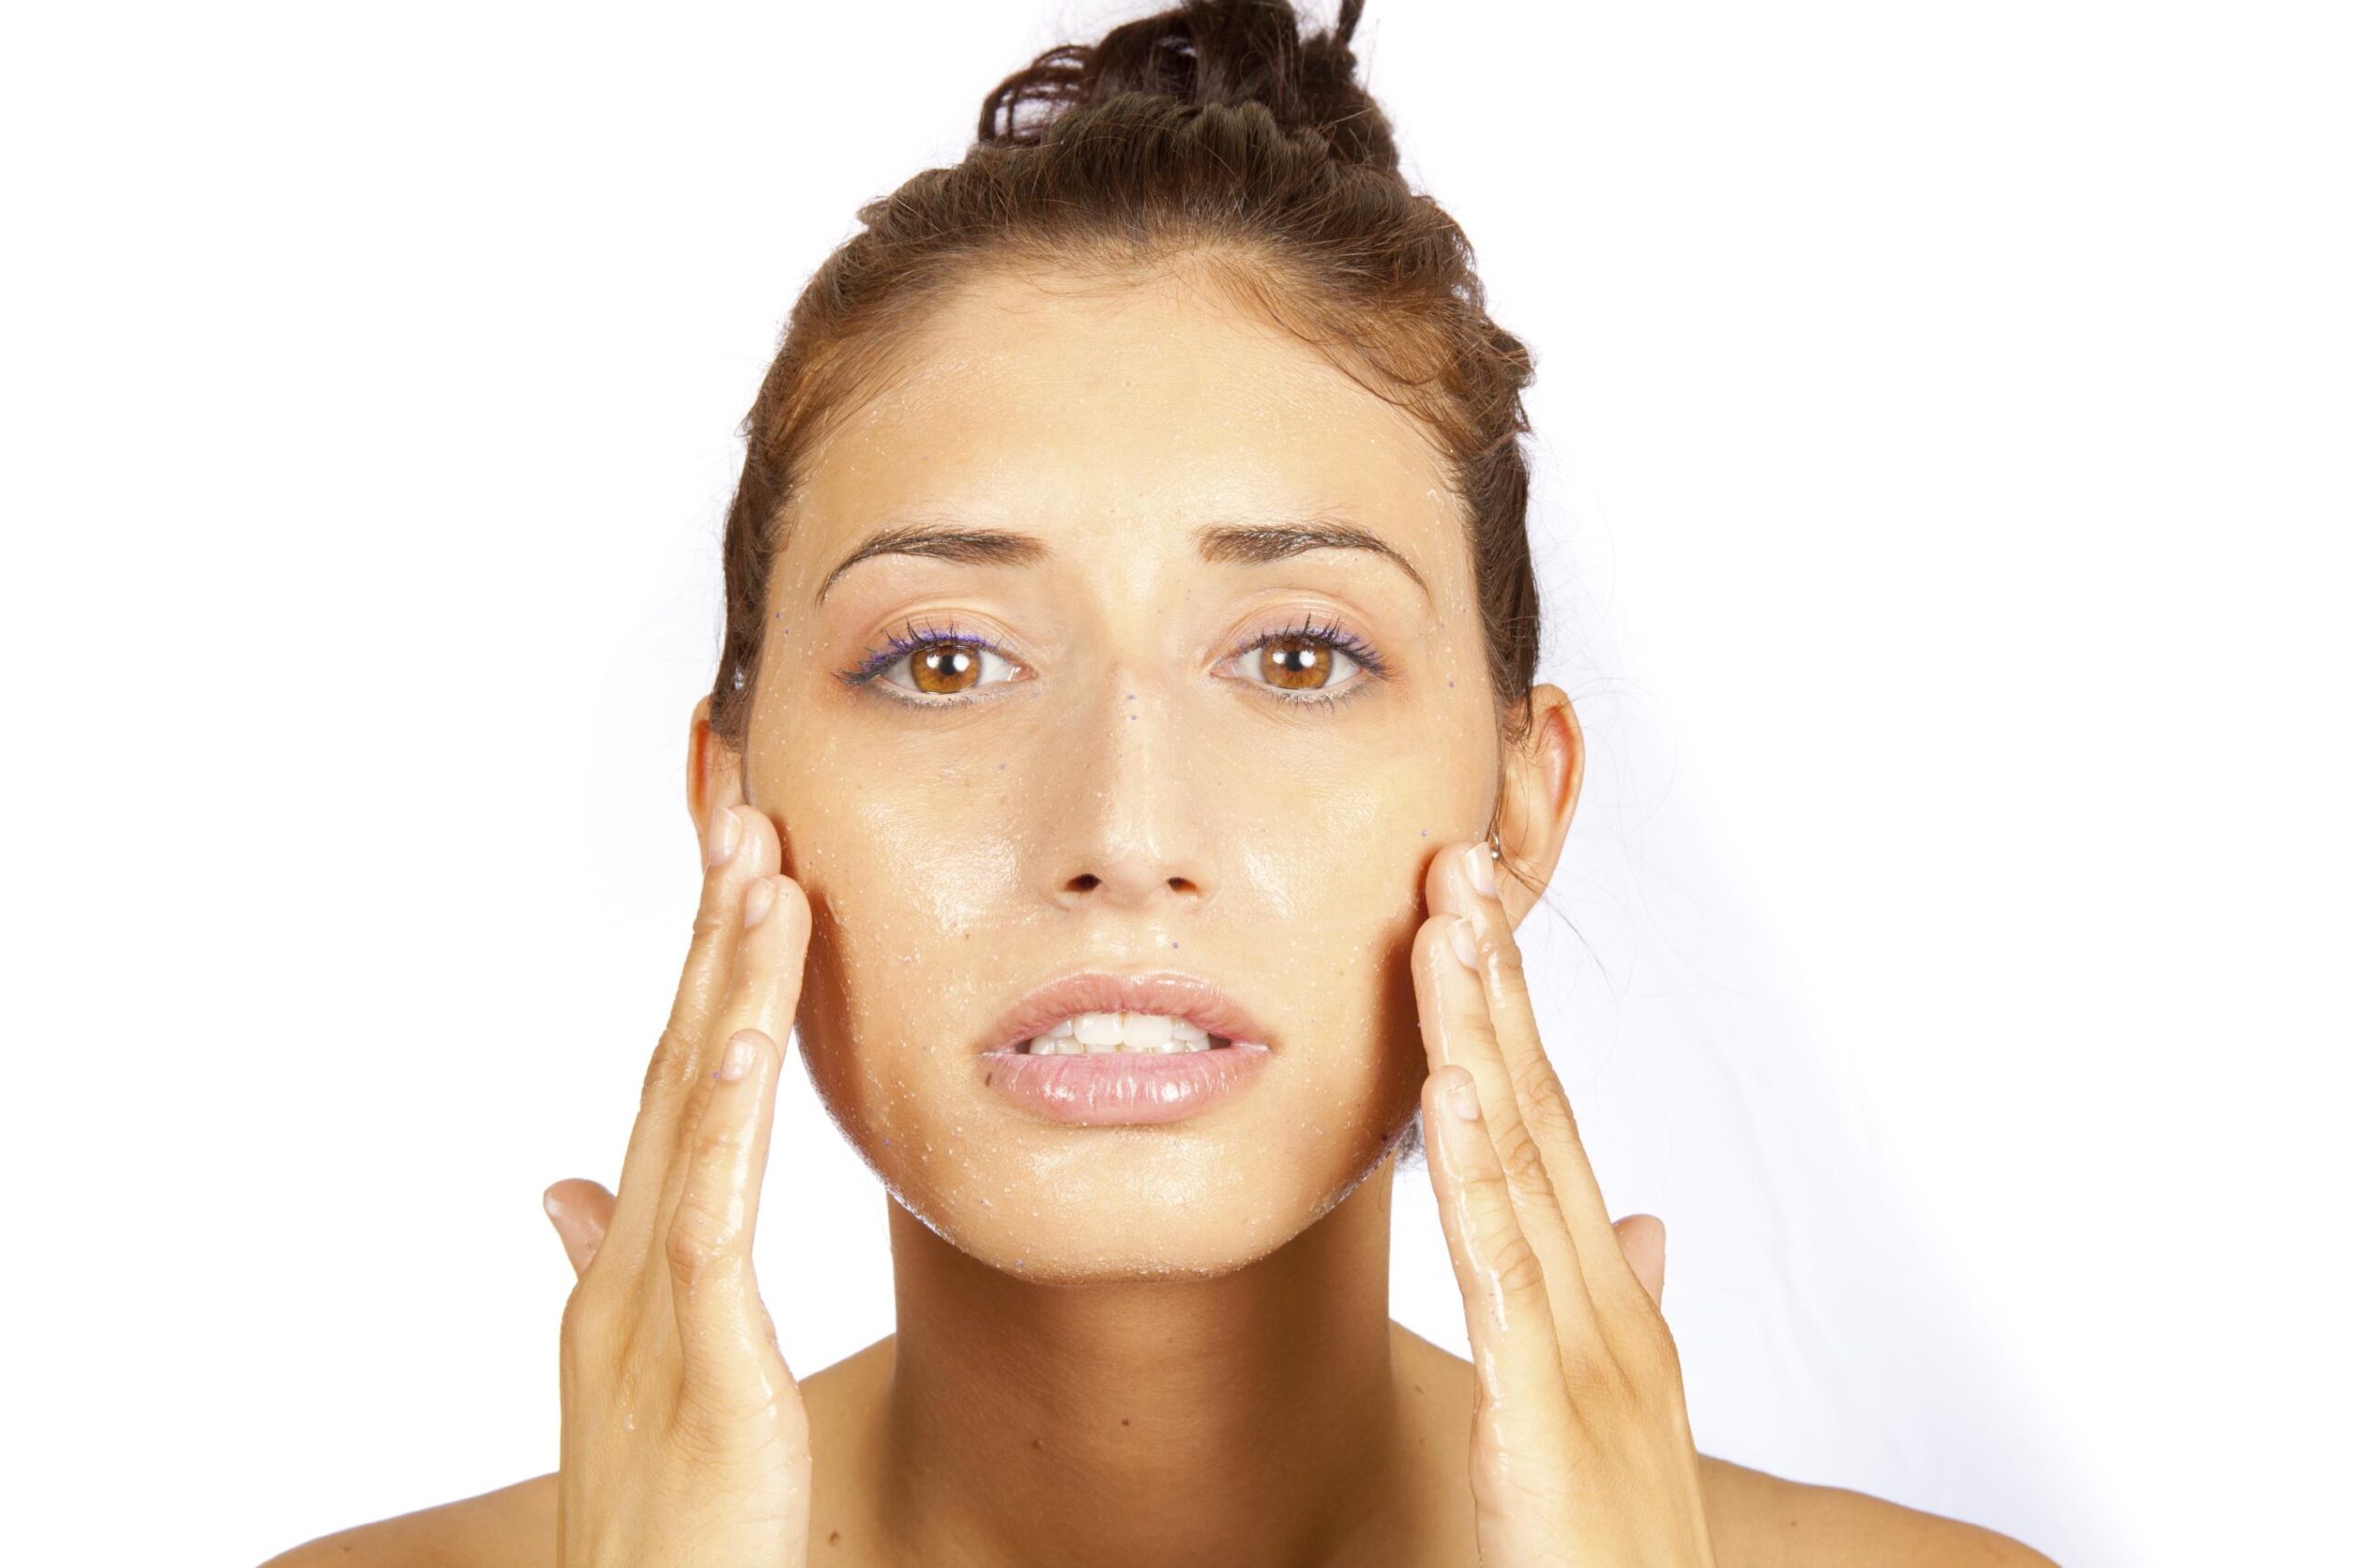 Los mejores consejos para el cuidado de tu cara